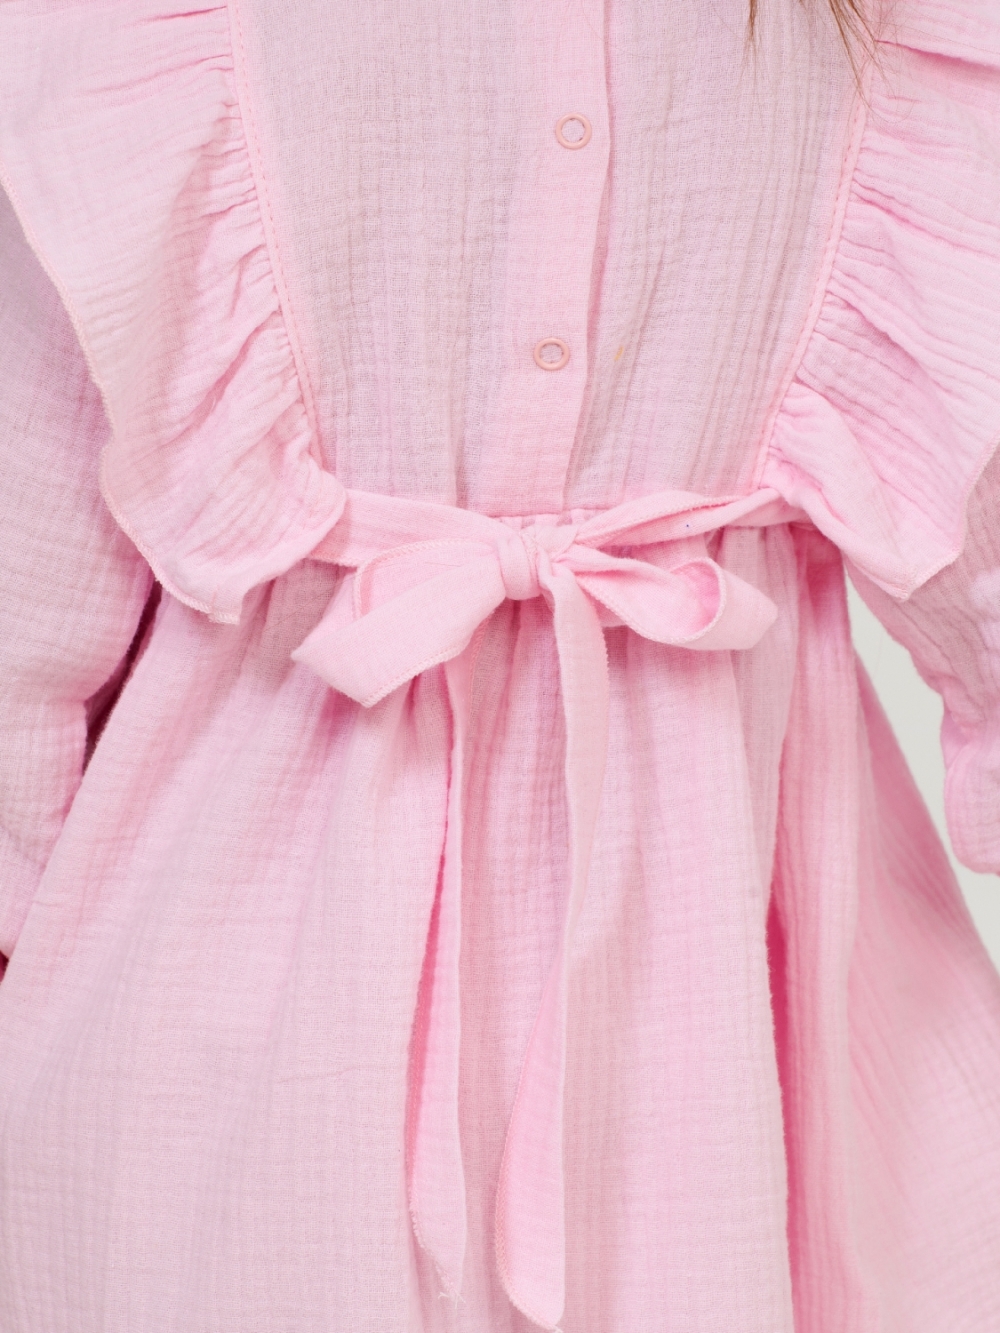 321-Р. Платье из муслина детское, хлопок 100% розовый, р. 74,80,86,92